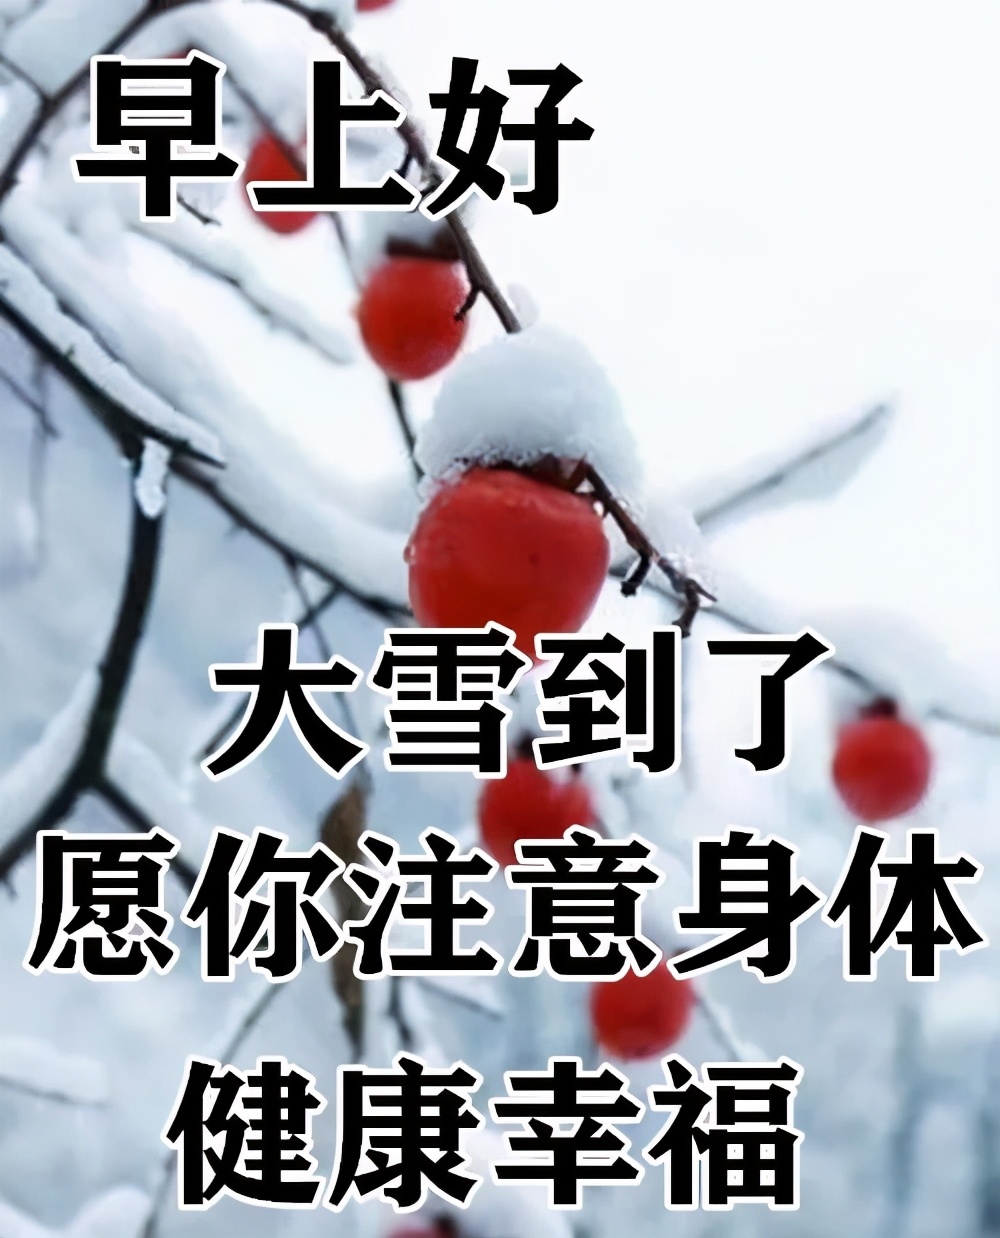 精美的大雪早安祝福语动态表情图片 冬天注意保暖问候语简短